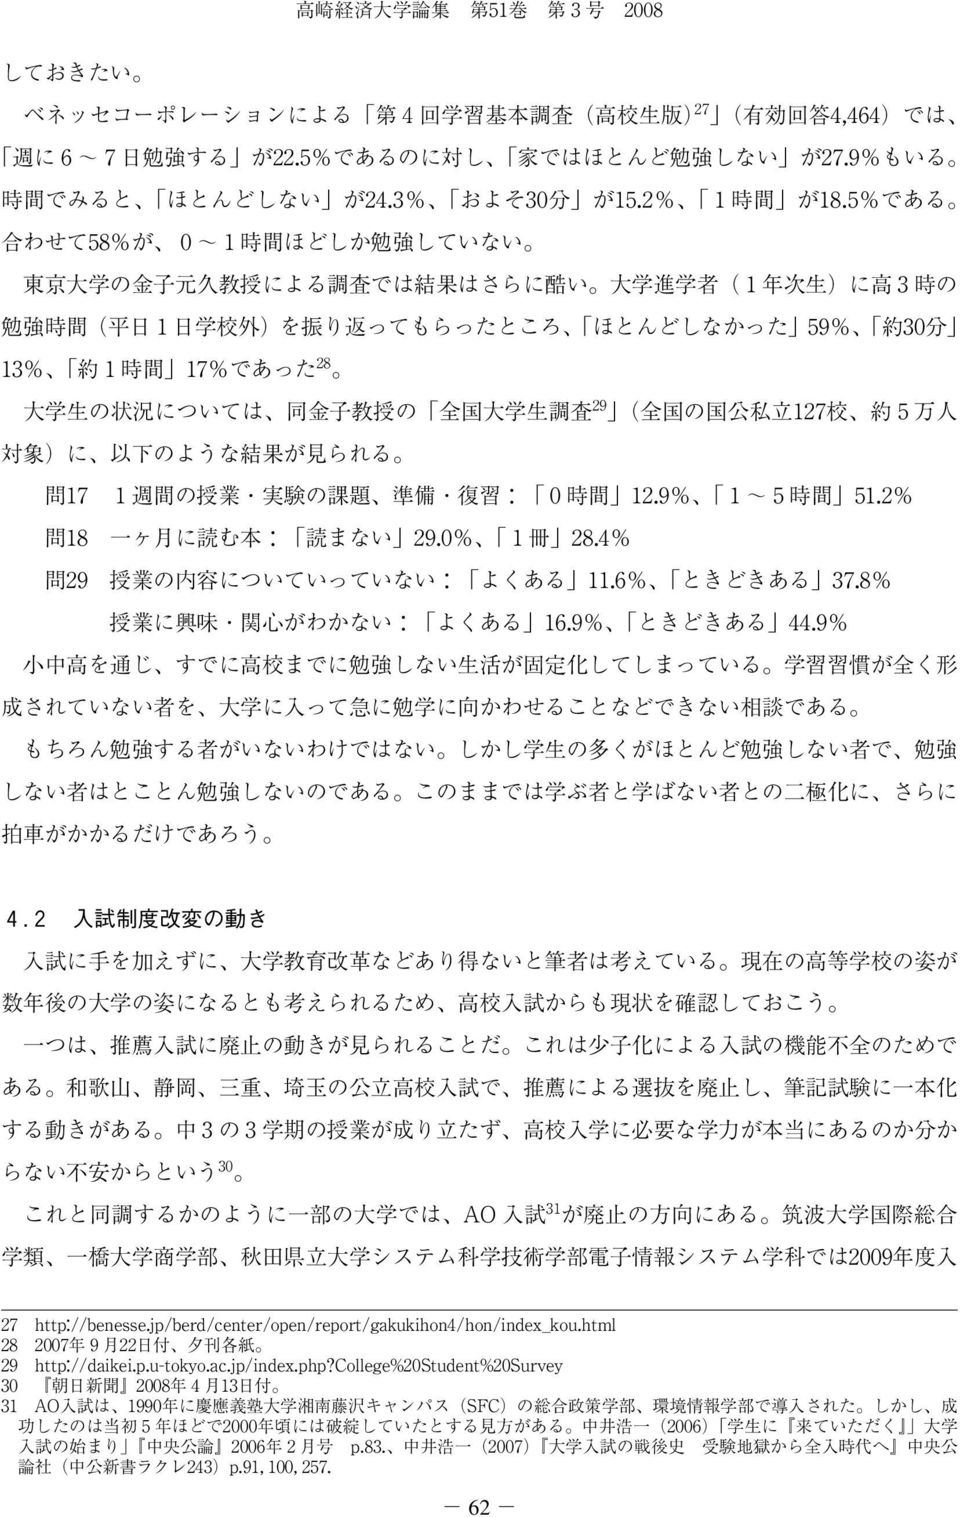 jp/berd/center/open/report/gakukihon4/hon/index_kou.html 28 2007 22 29 http://daikei.p.u-tokyo.